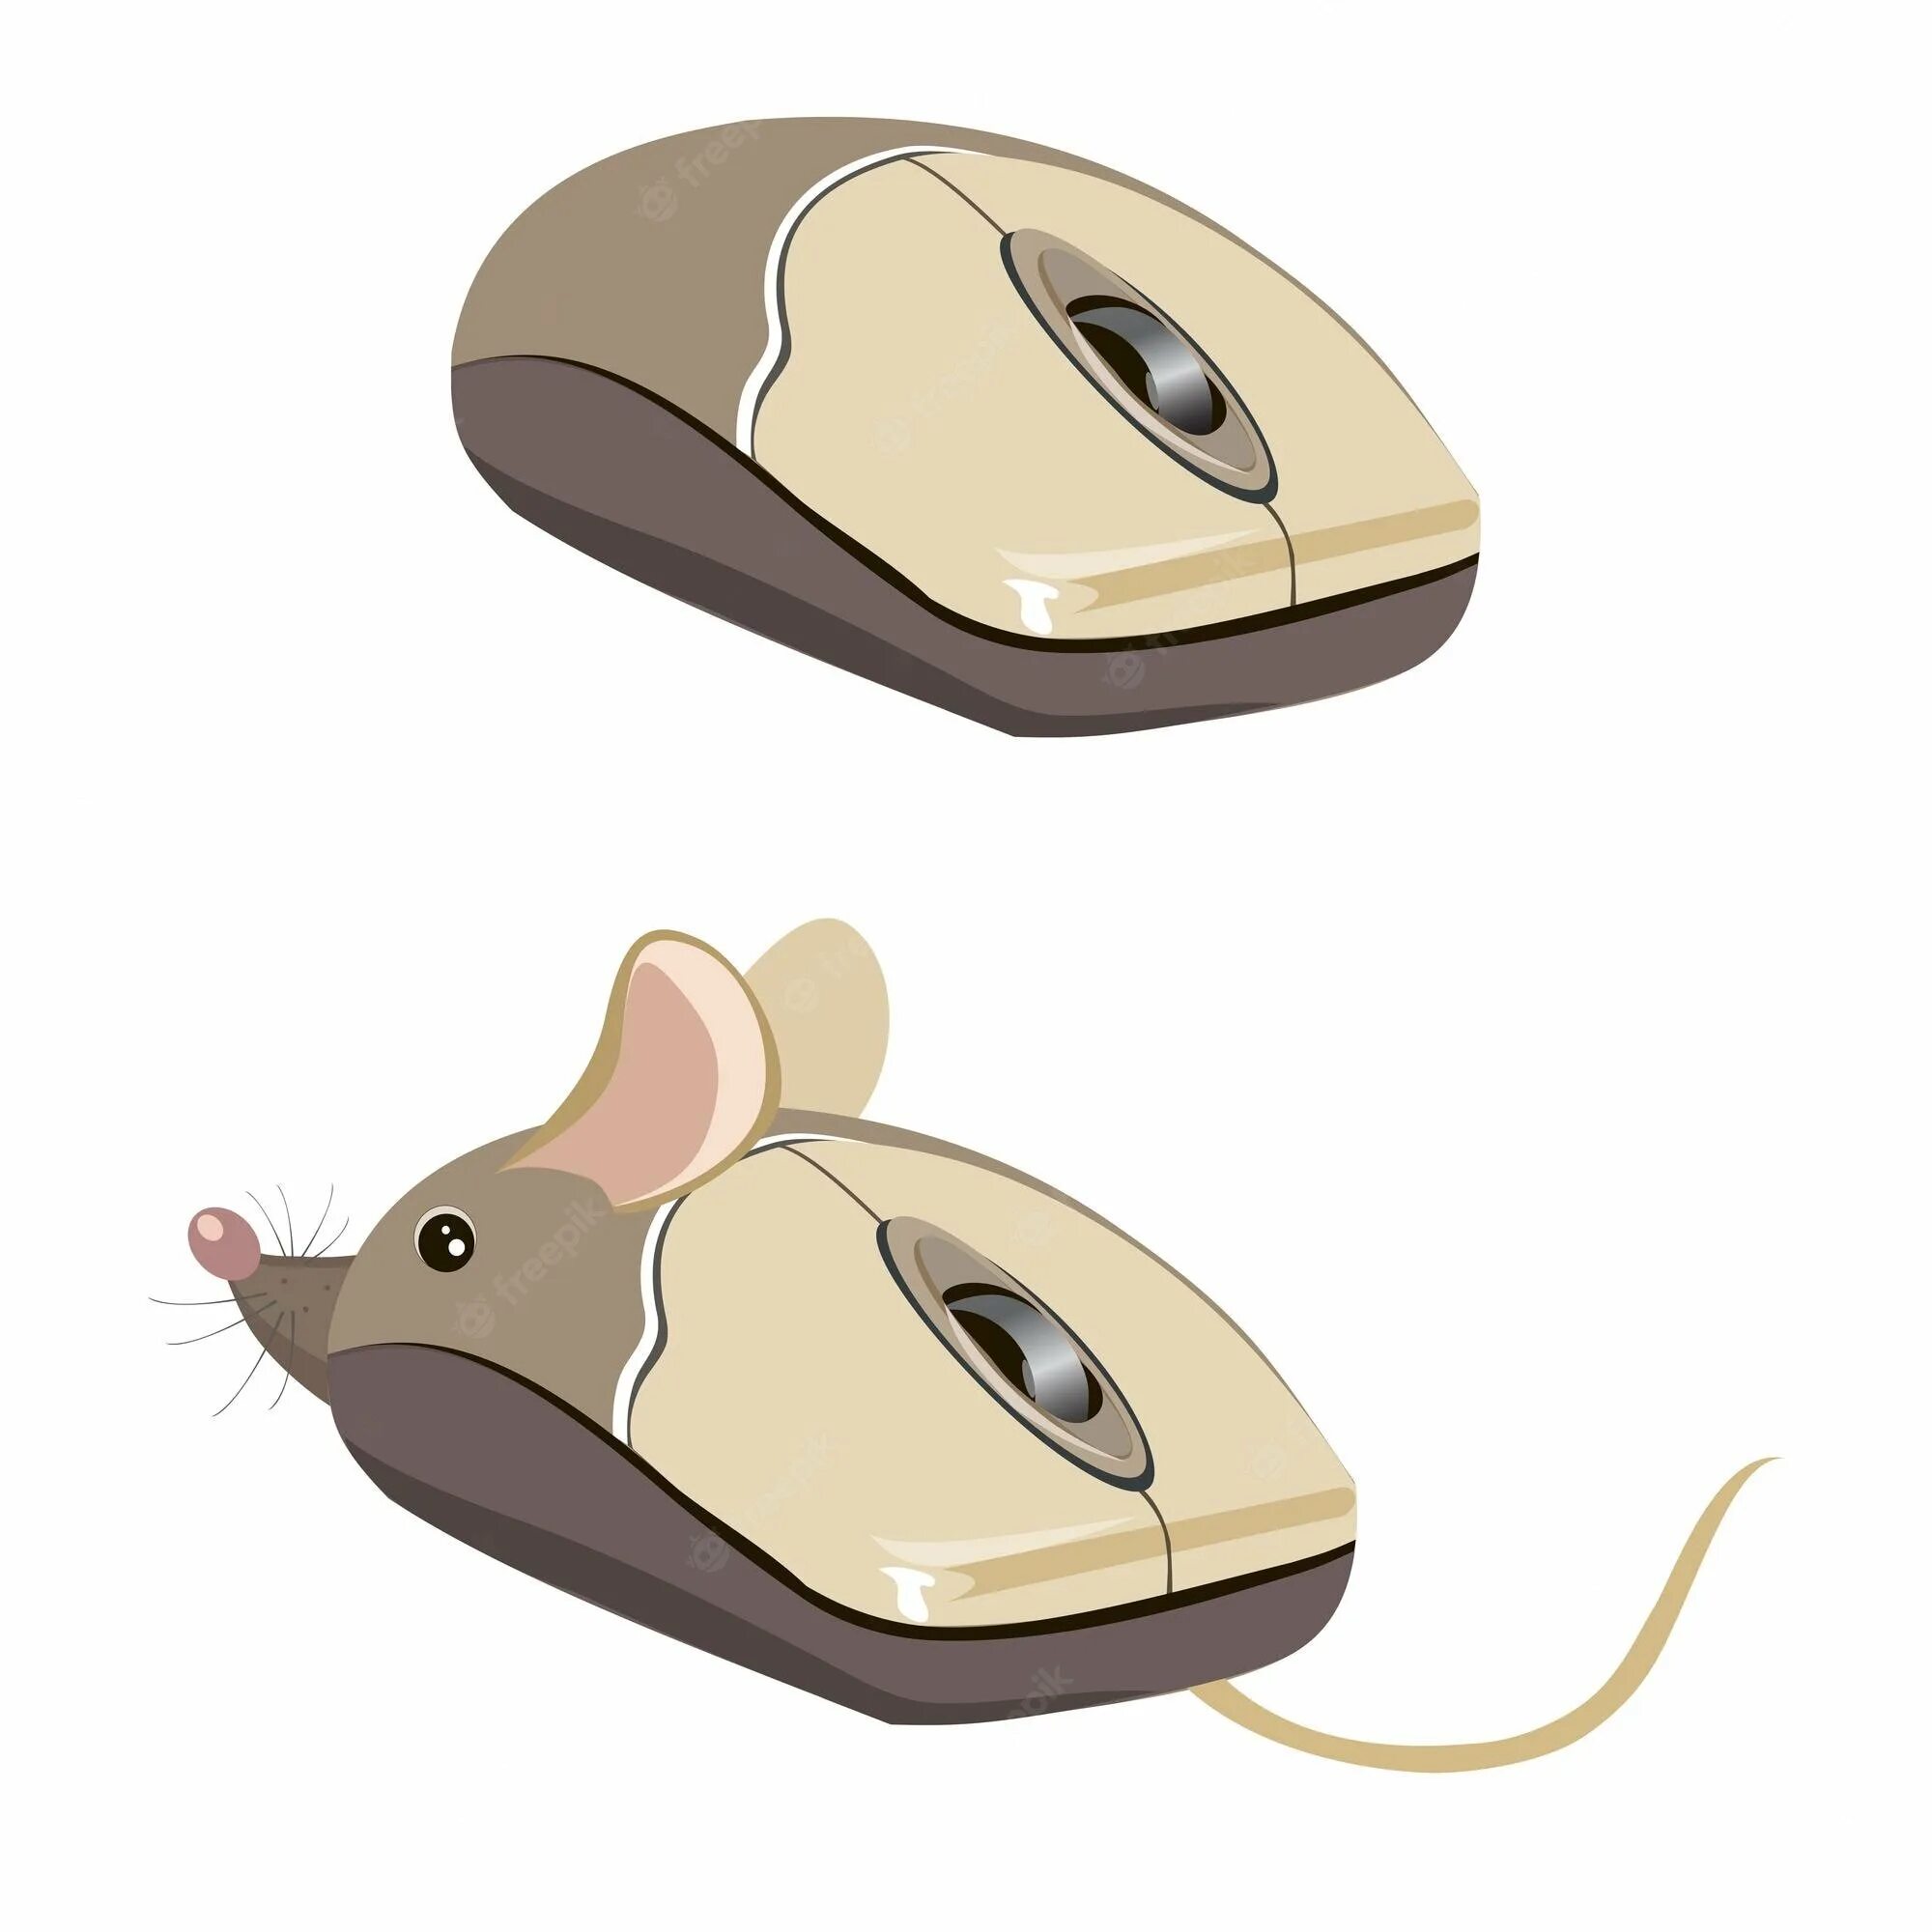 Компьютерная мышь рисунок. Детская компьютерная мышь. Мышка компьютерная рисунок. Изображение компьютерной мыши. Развитие мышей